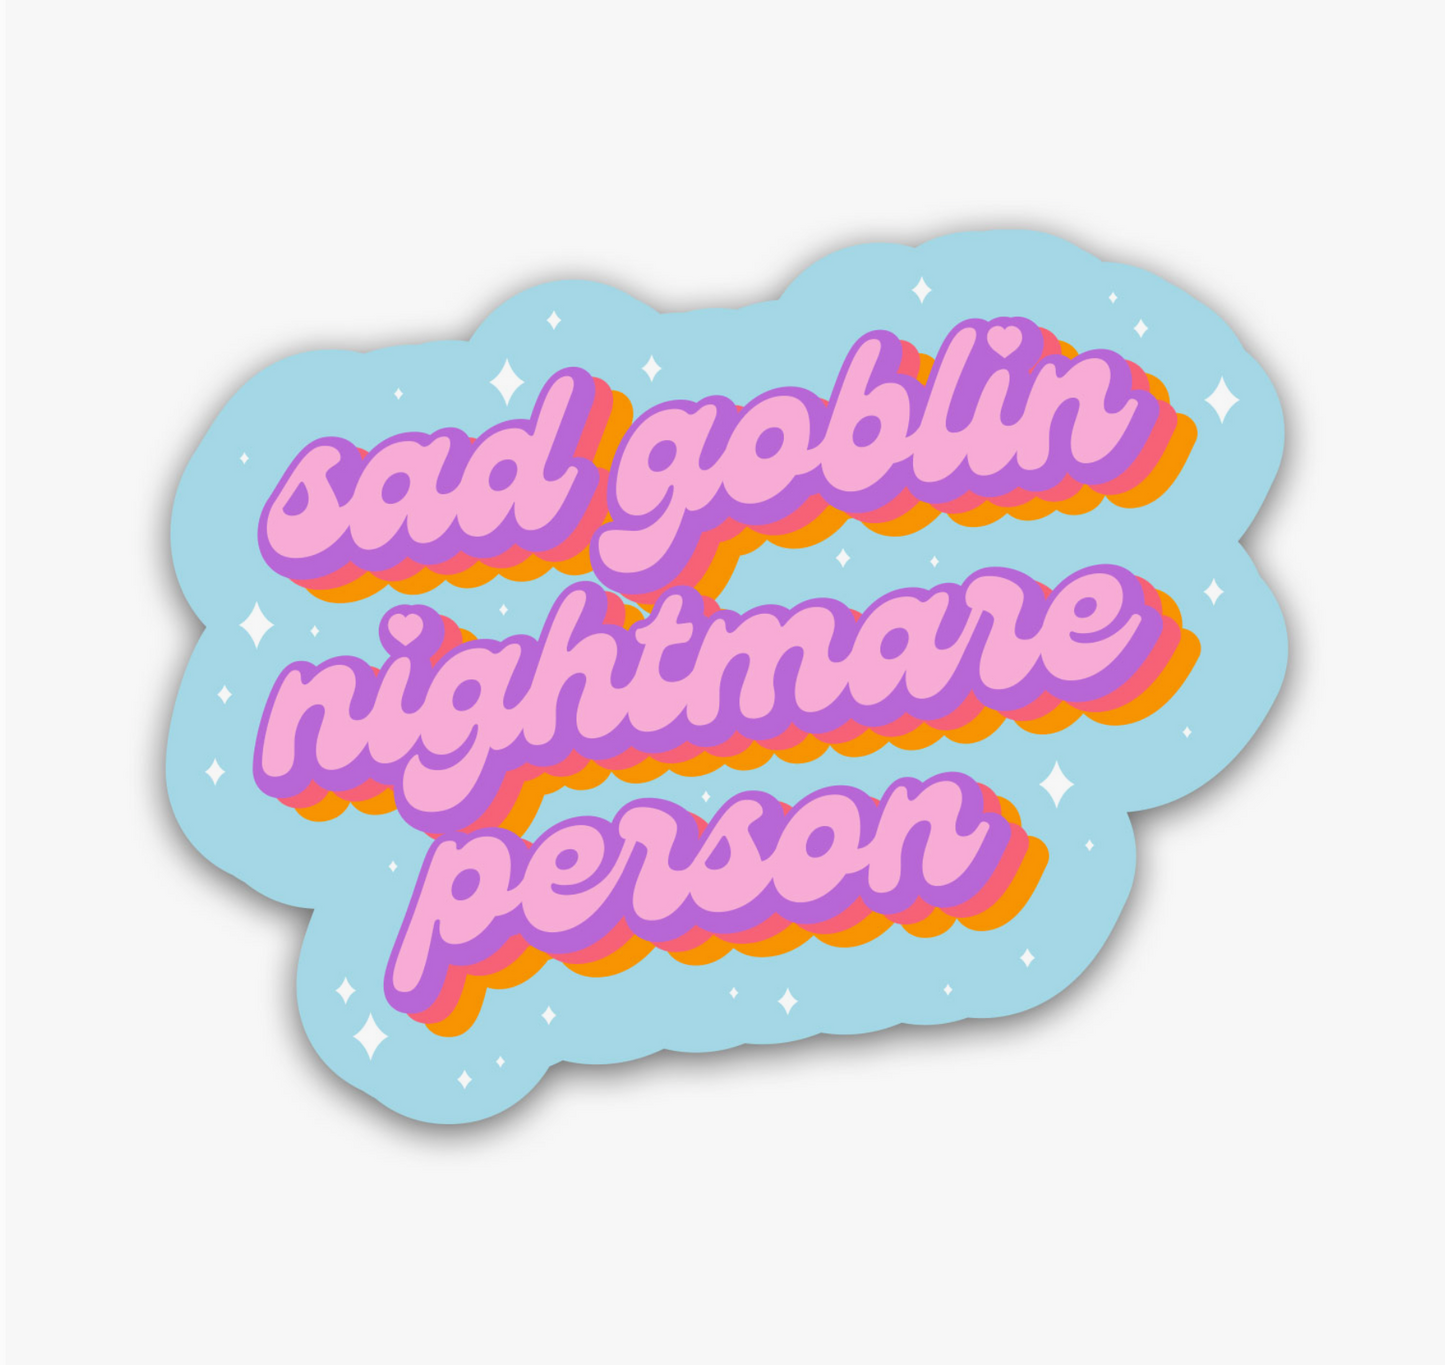 Sad Goblin Nightmare Person Sticker